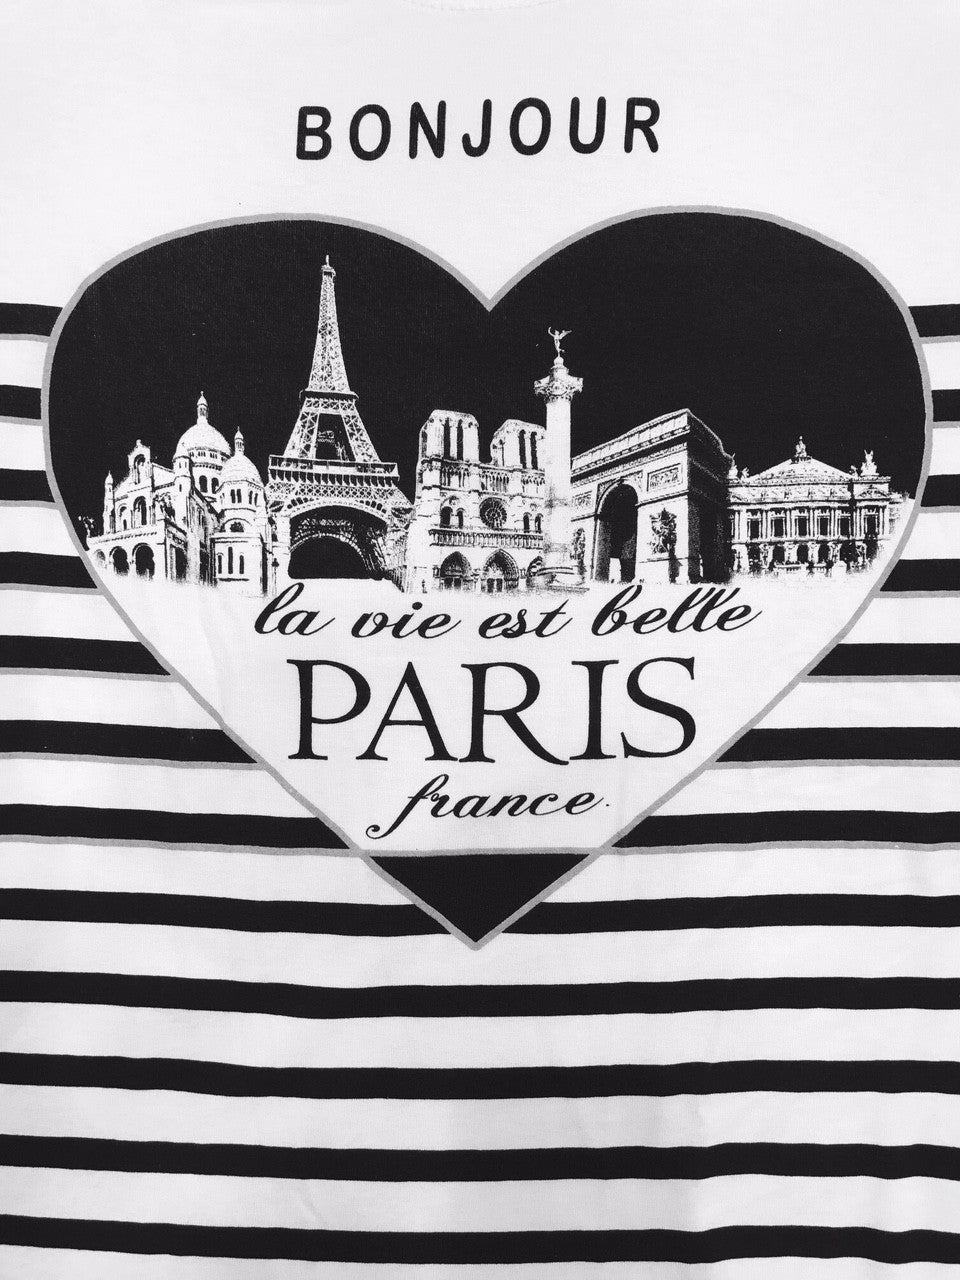 Tee shirt Paris France " BONJOUR La vie est belle "